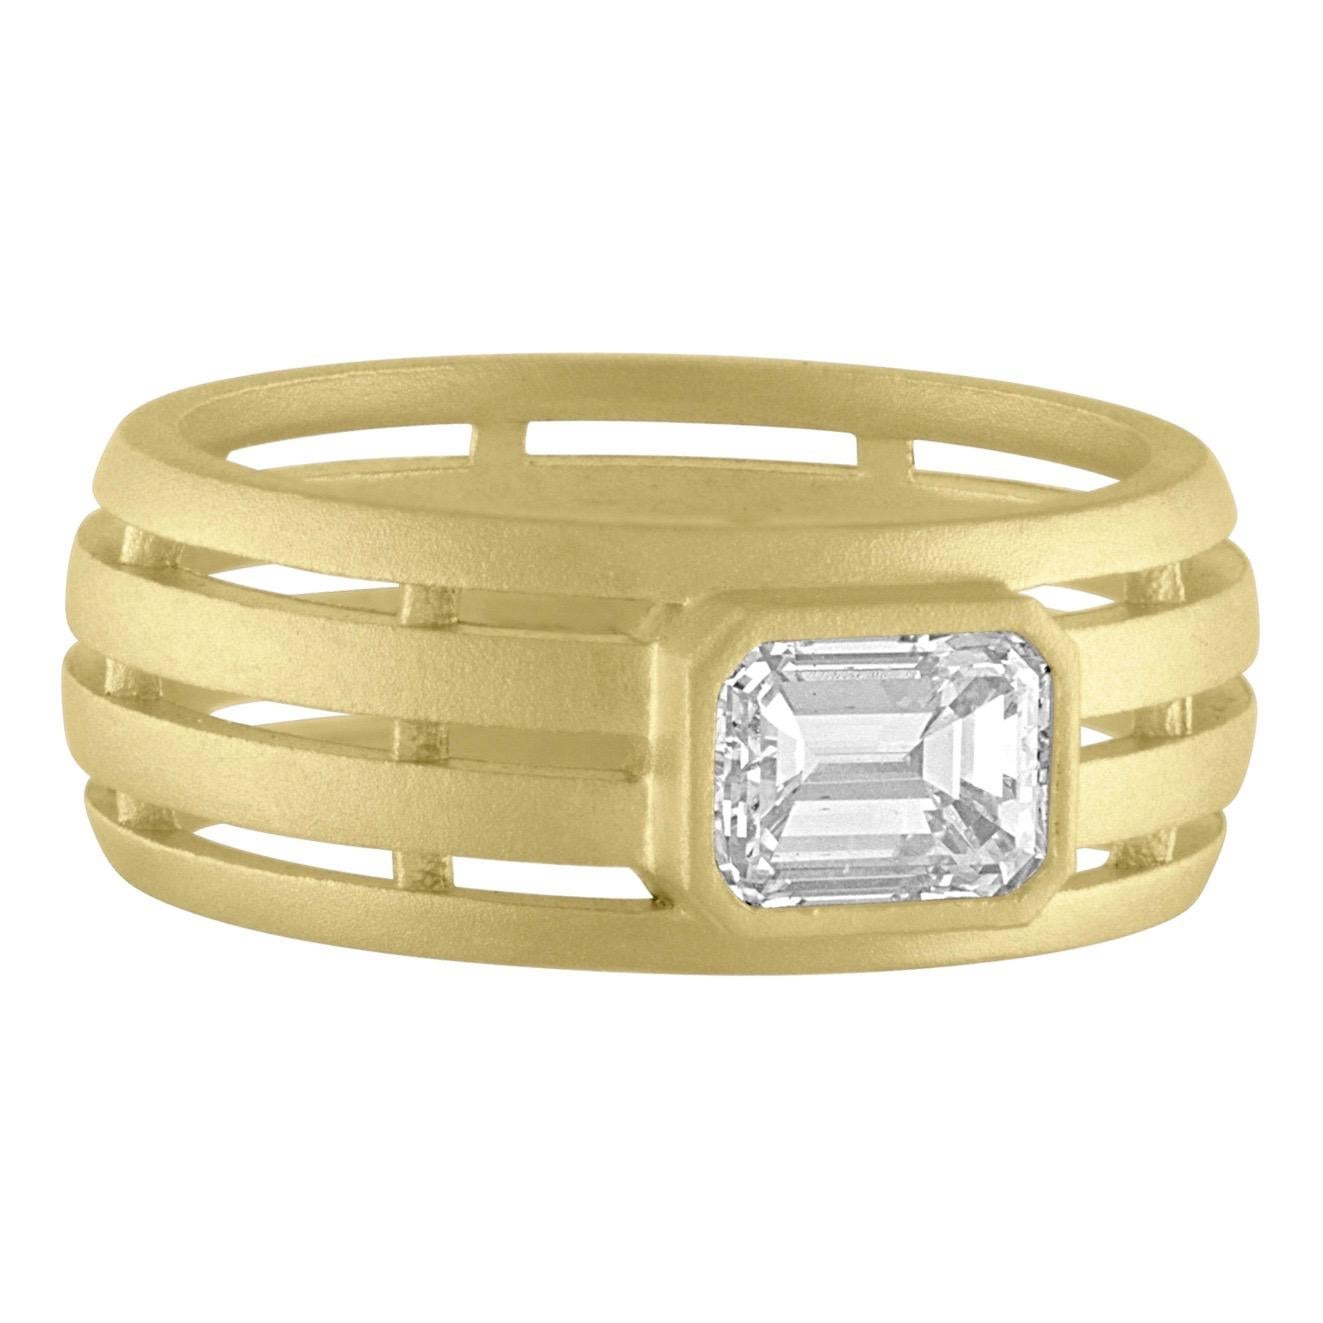 18K Green Gold Matte Finish Emerald Cut Diamond Ring
Diamond weight .76ct 
size 6